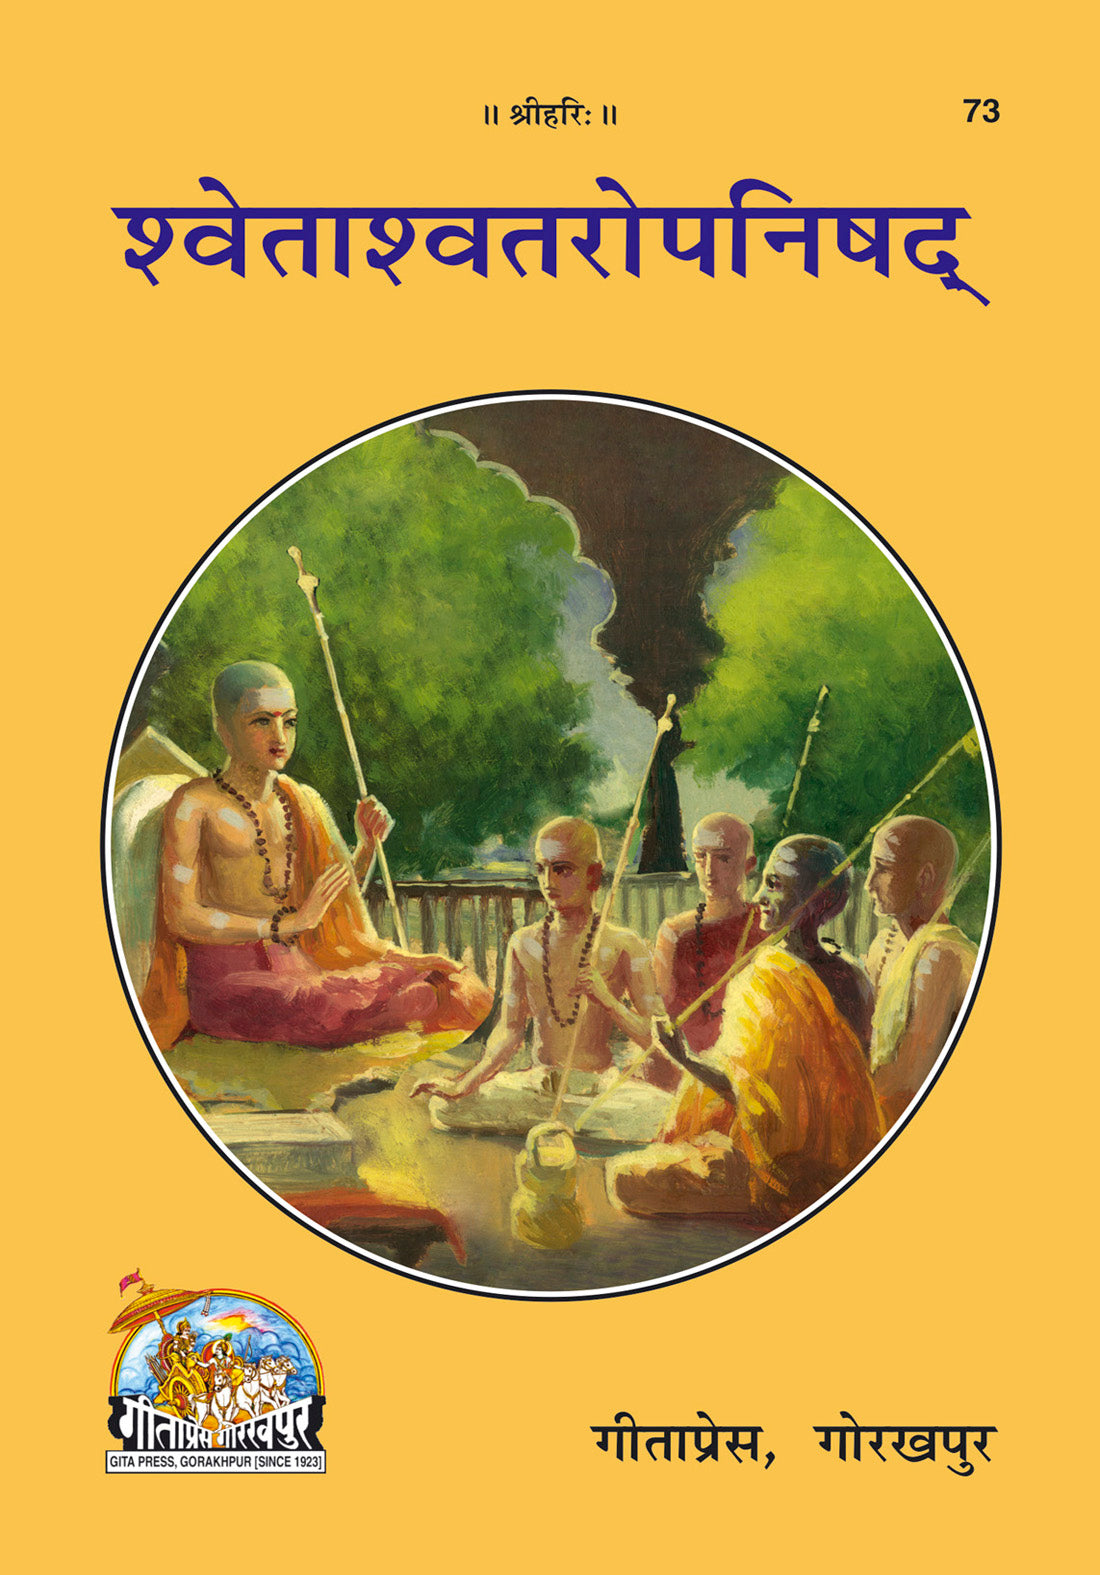 Shvetashvatara Upanishad (Commentary by Shankaracharya) by Gita Press शवेताशवतरोपनिषद्